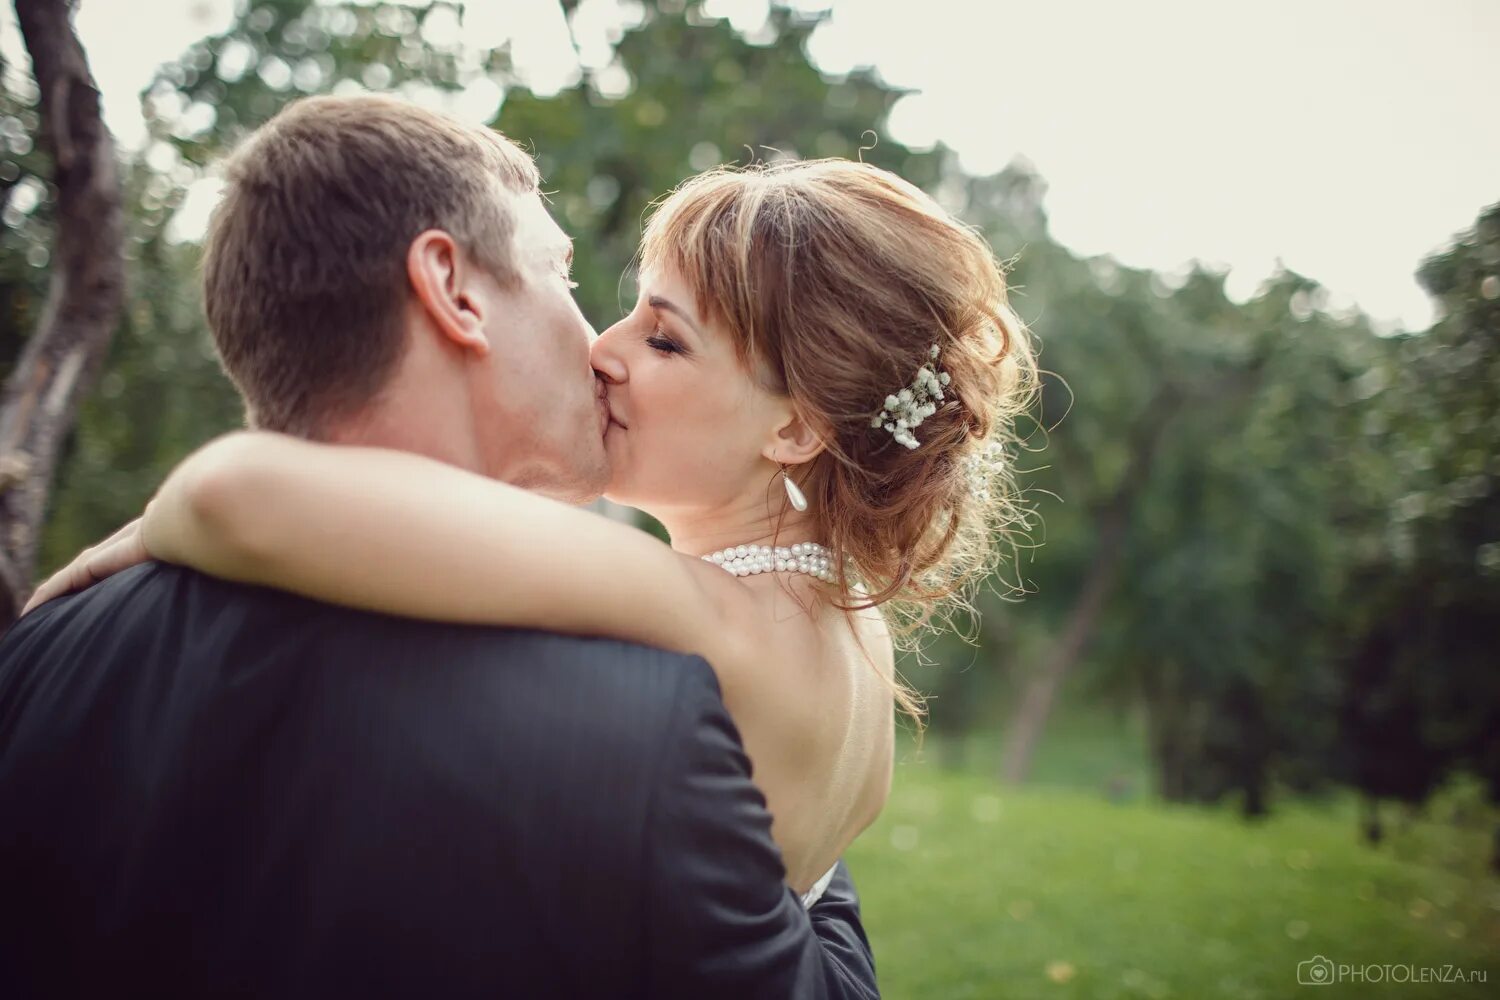 Поцелуй невесту читать. Свадебный поцелуй. Поцелуй невесты. Свадебный поцелуй фото. Красивое фото свадебного поцелуя.